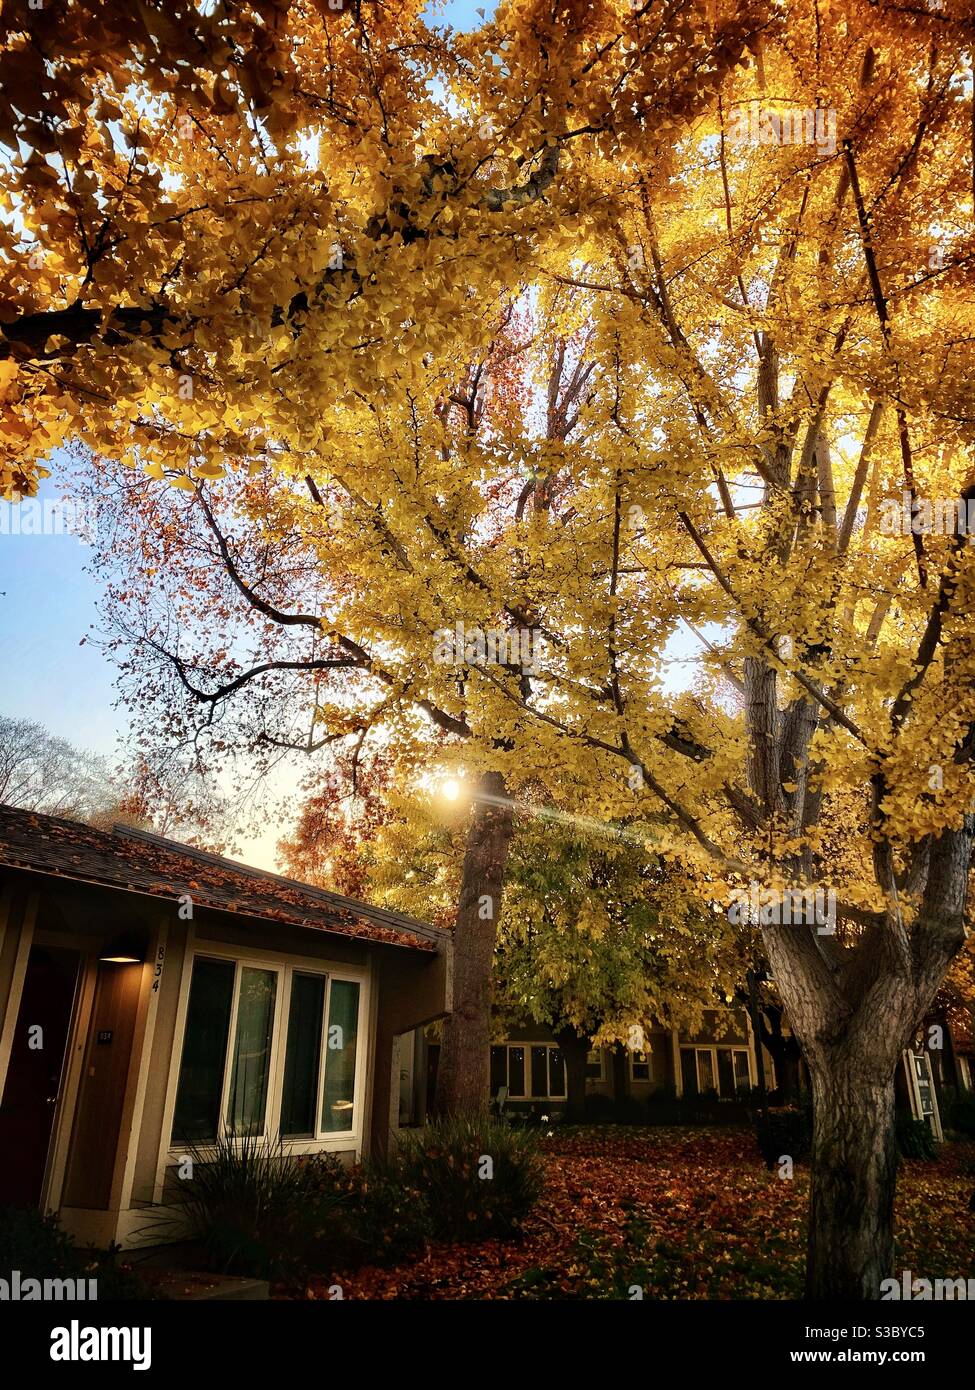 Le case nelle foglie giallastre degli alberi dopo l'alba Foto Stock